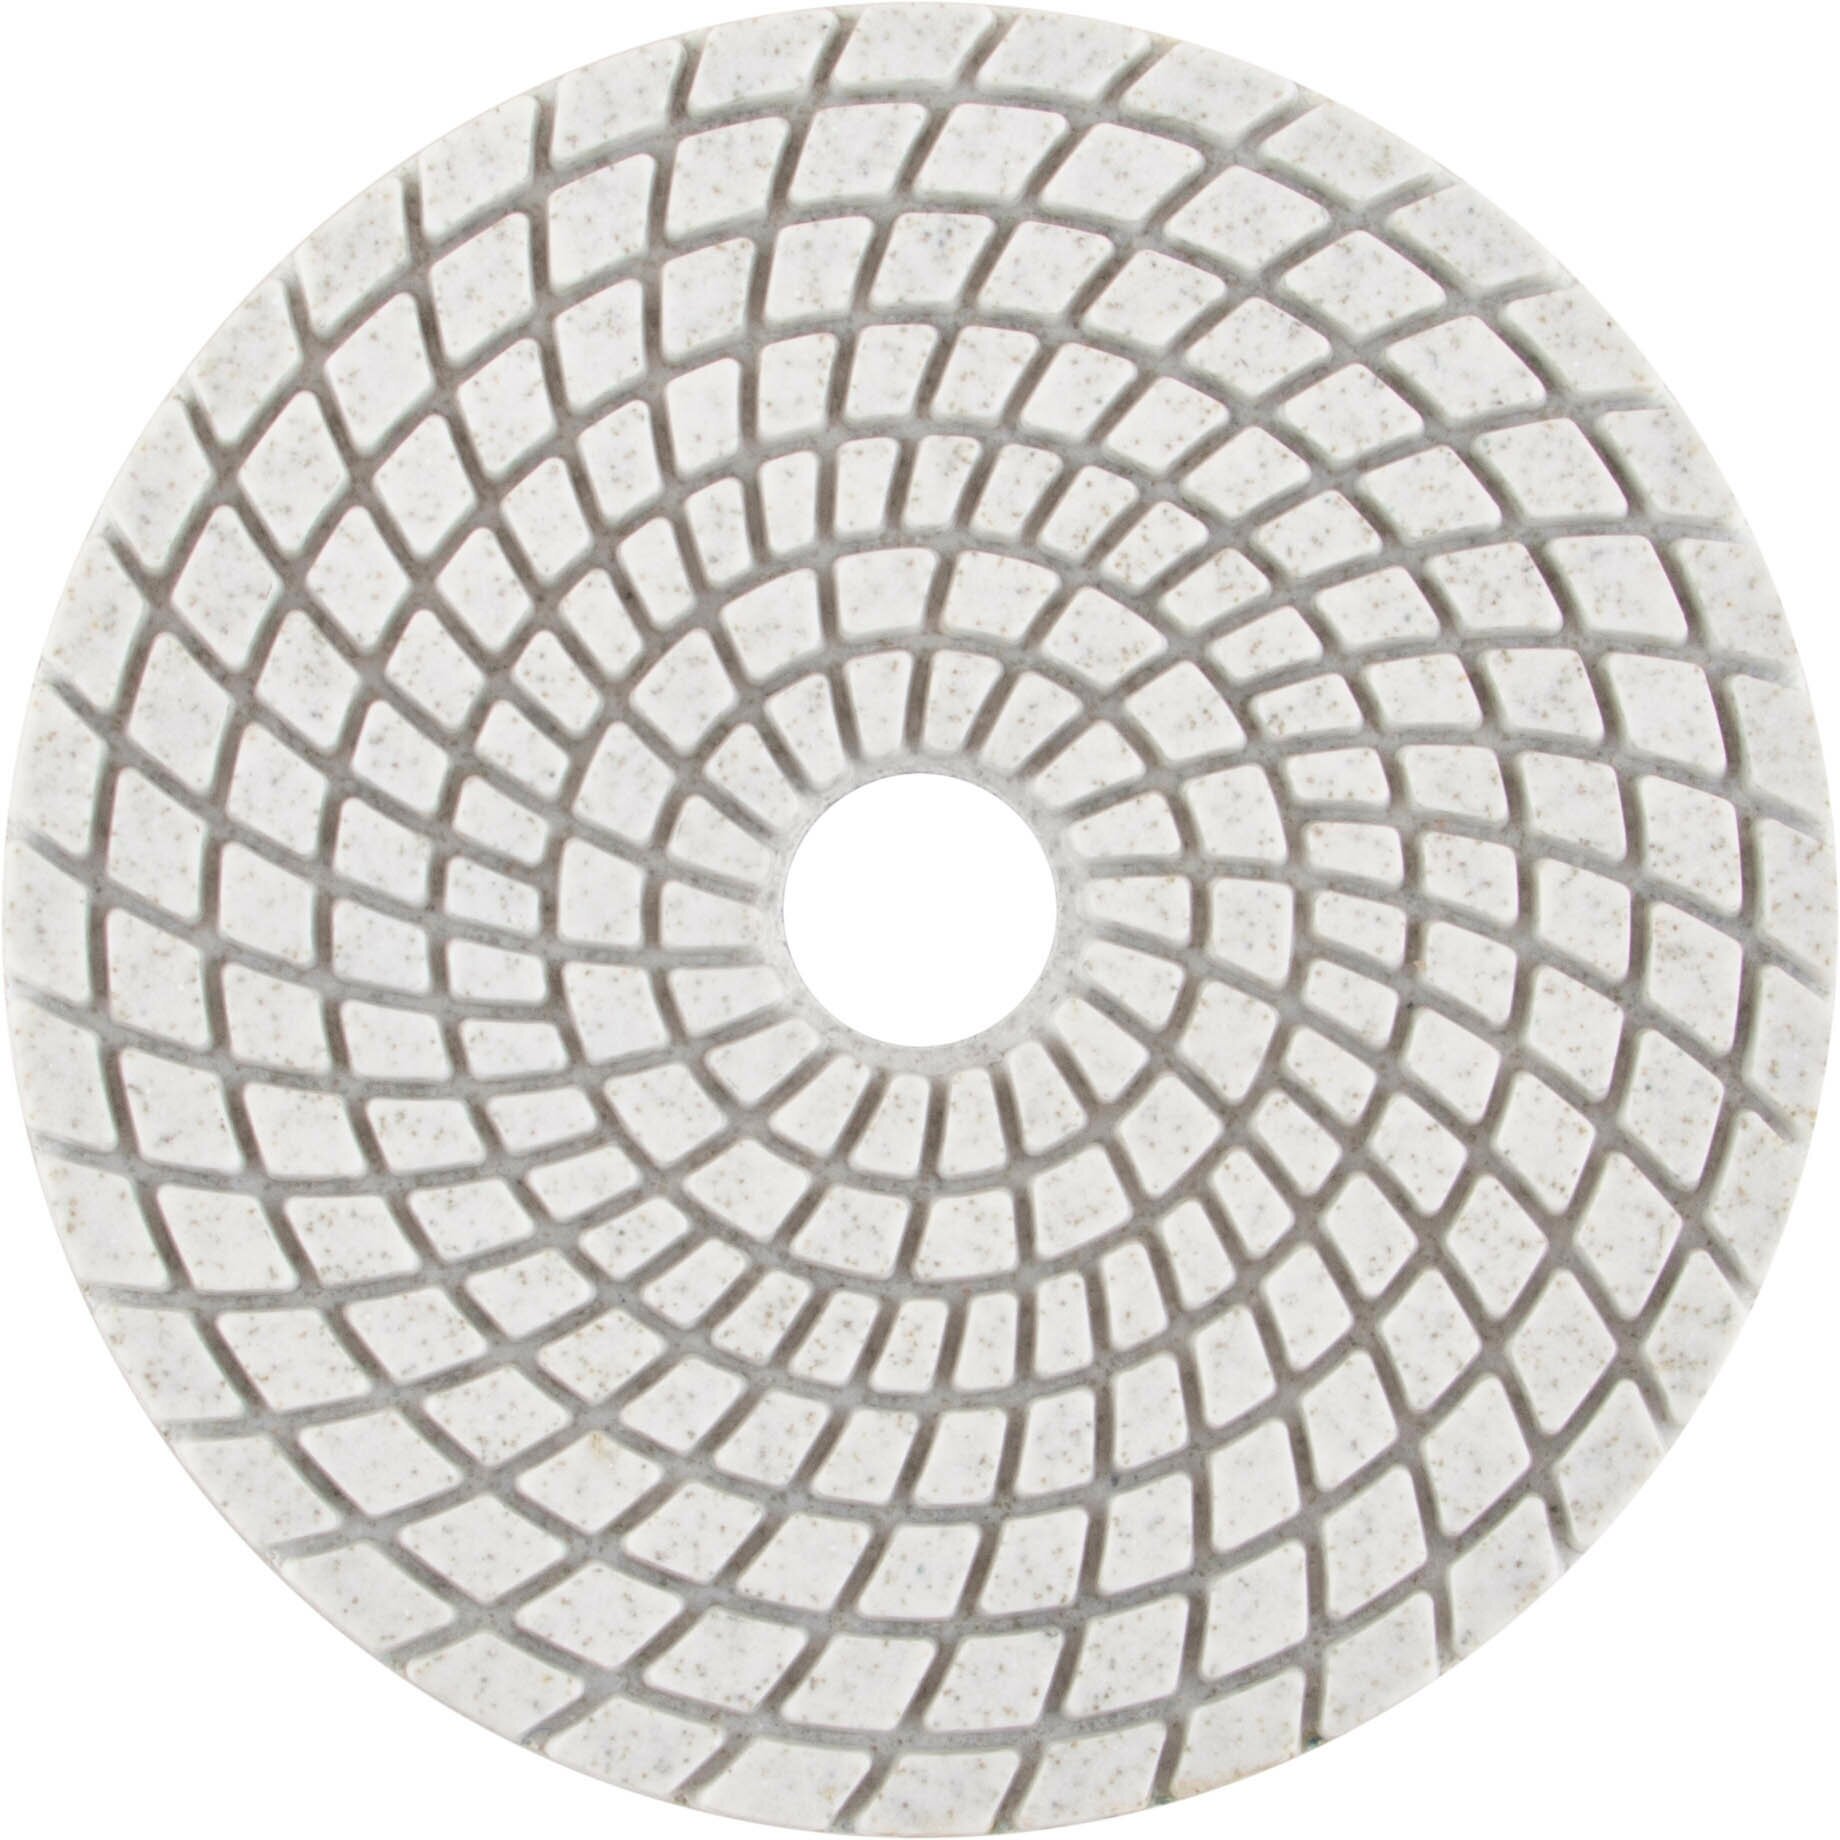 Алмазный гибкий шлифовальный круг АГШК (липучка) влажное шлифование 125 мм Р 100 (39882)